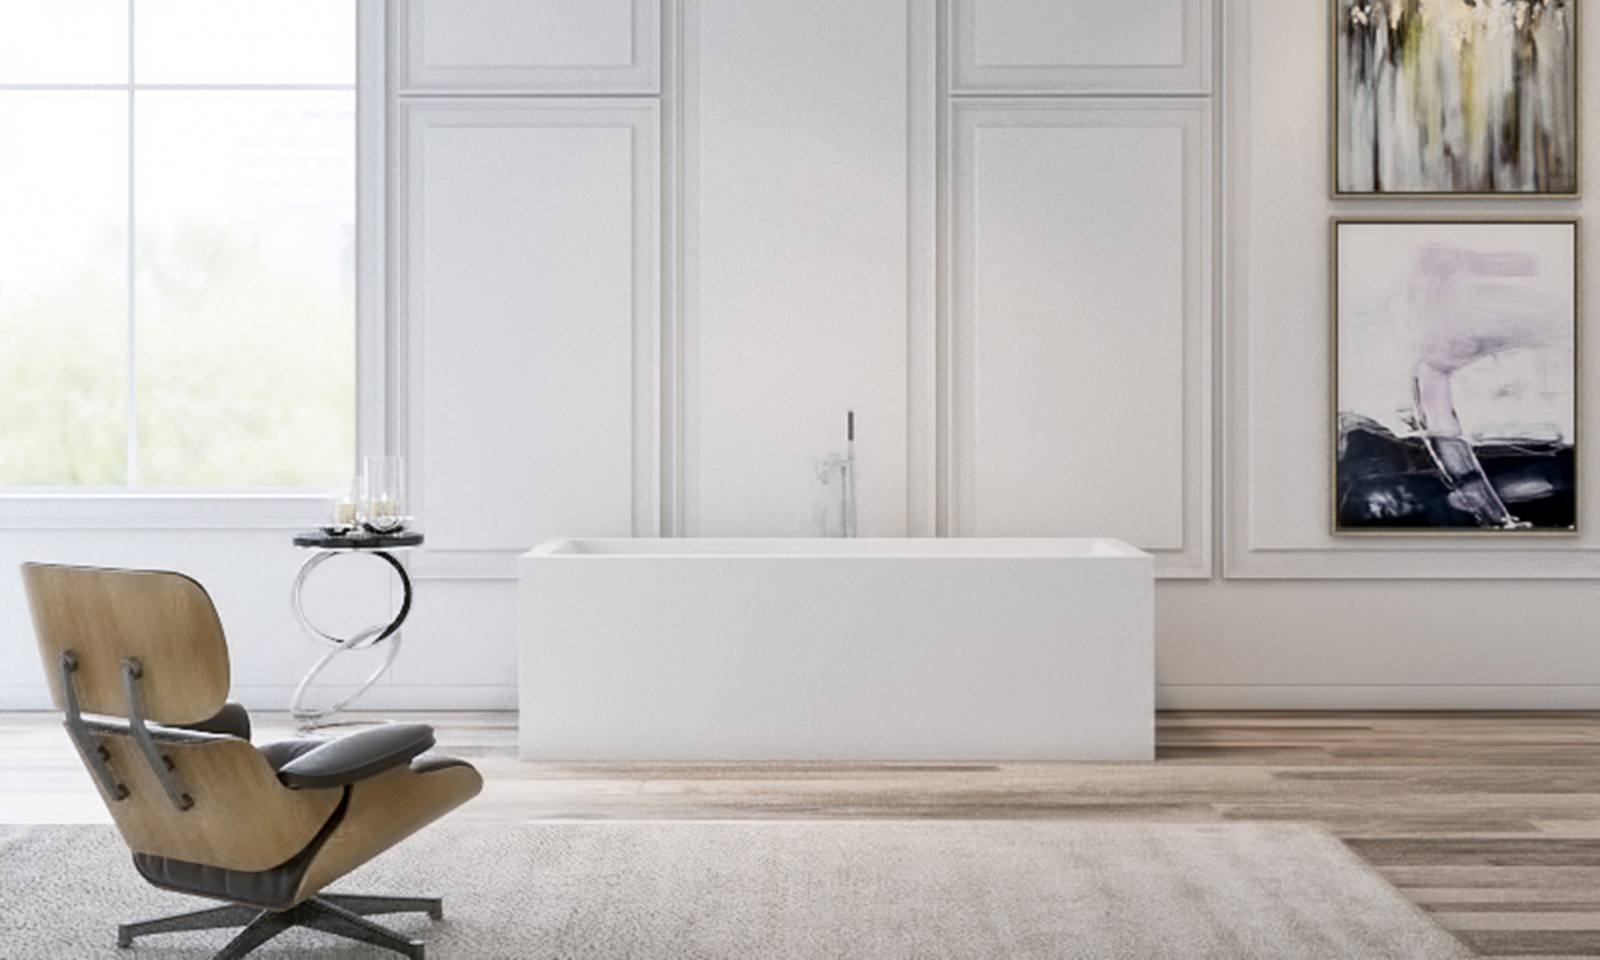 FREDENSBORG BADEKAR | Copenhagen bath frittstående firkantet matt hvit badekar